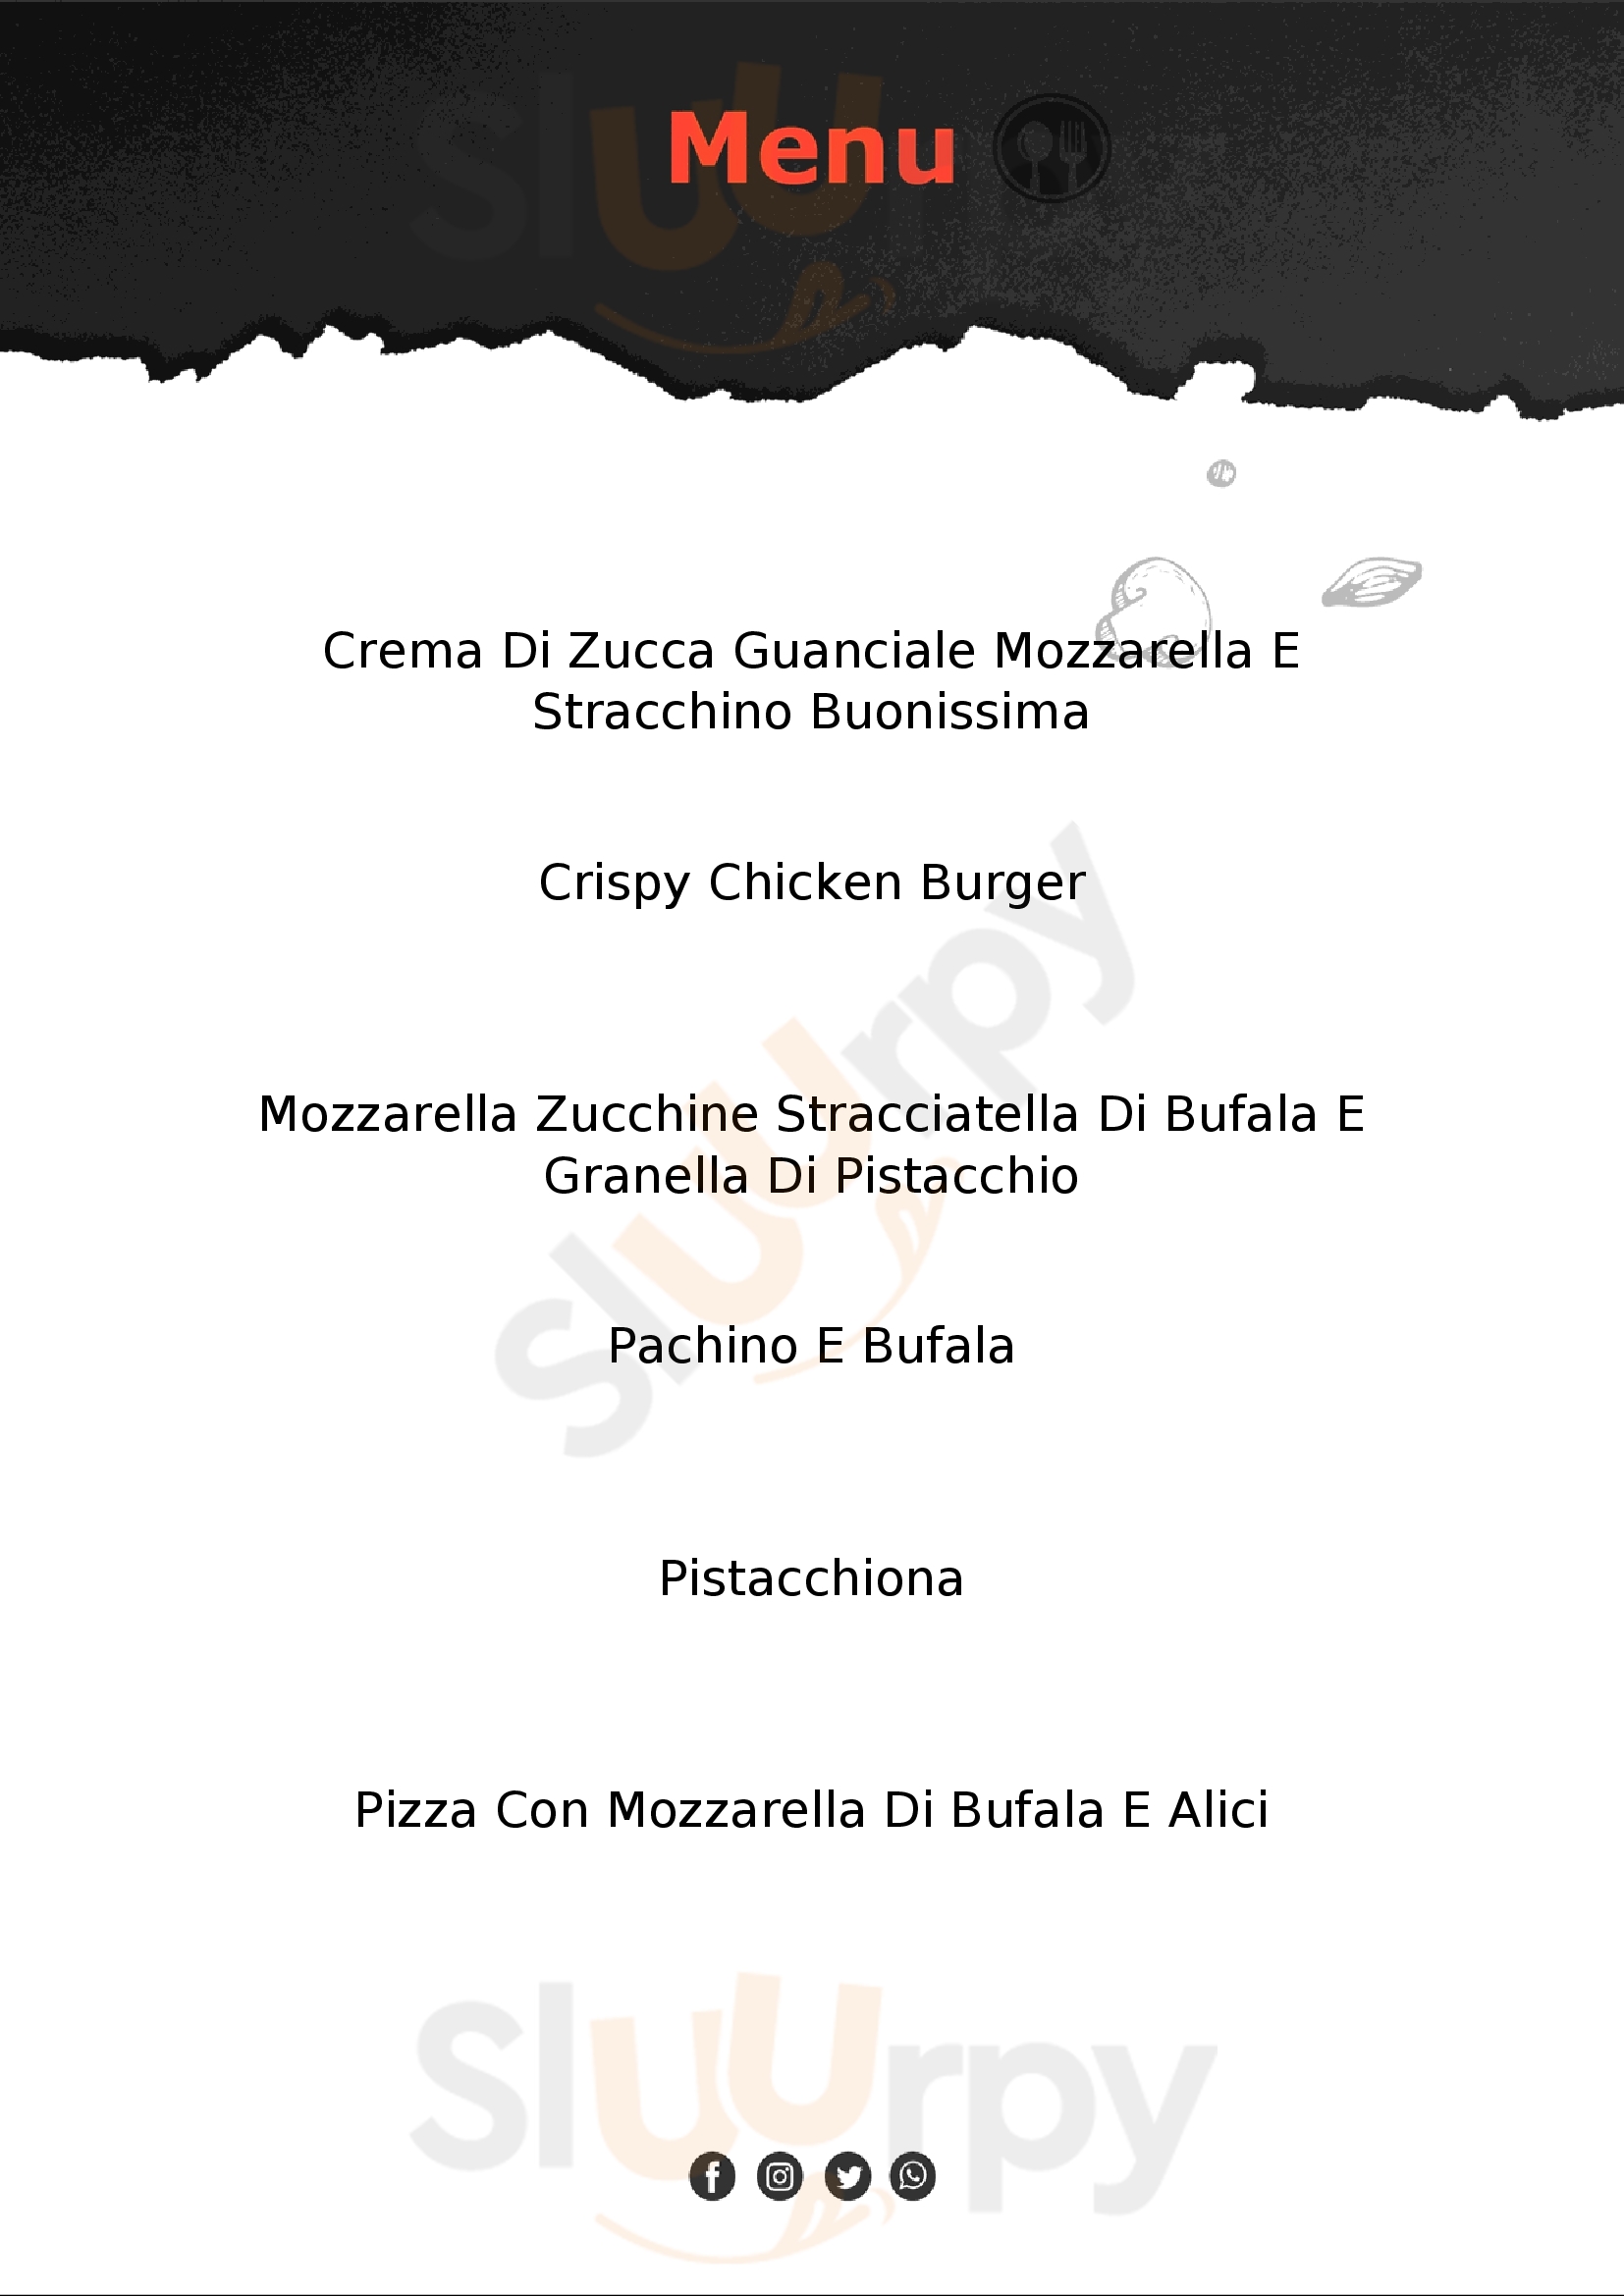 Farro Pizzeria Roma menù 1 pagina